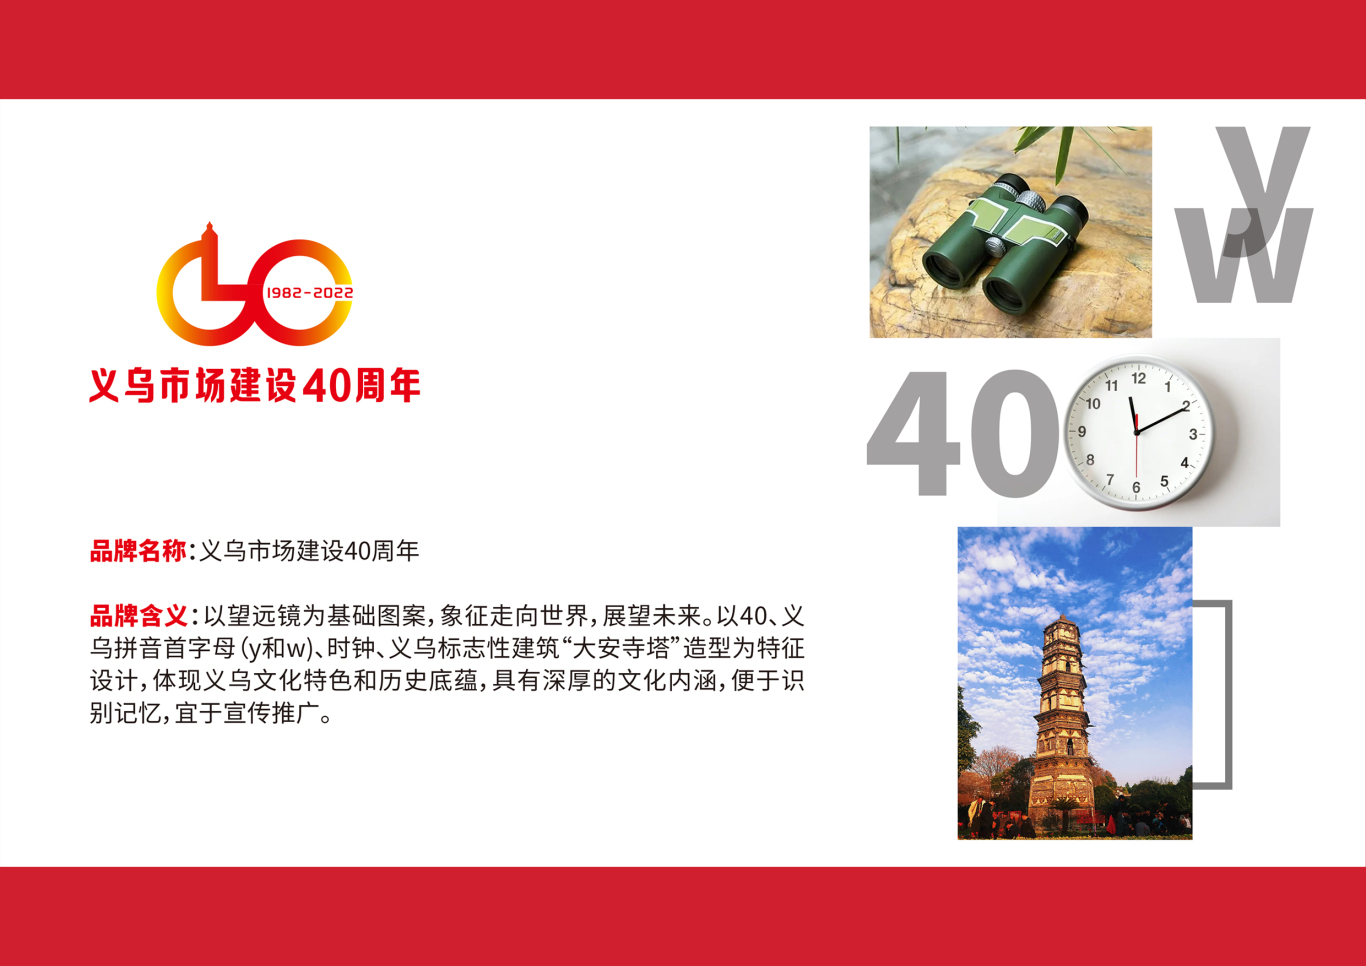 义乌市场建设40周年标识图1